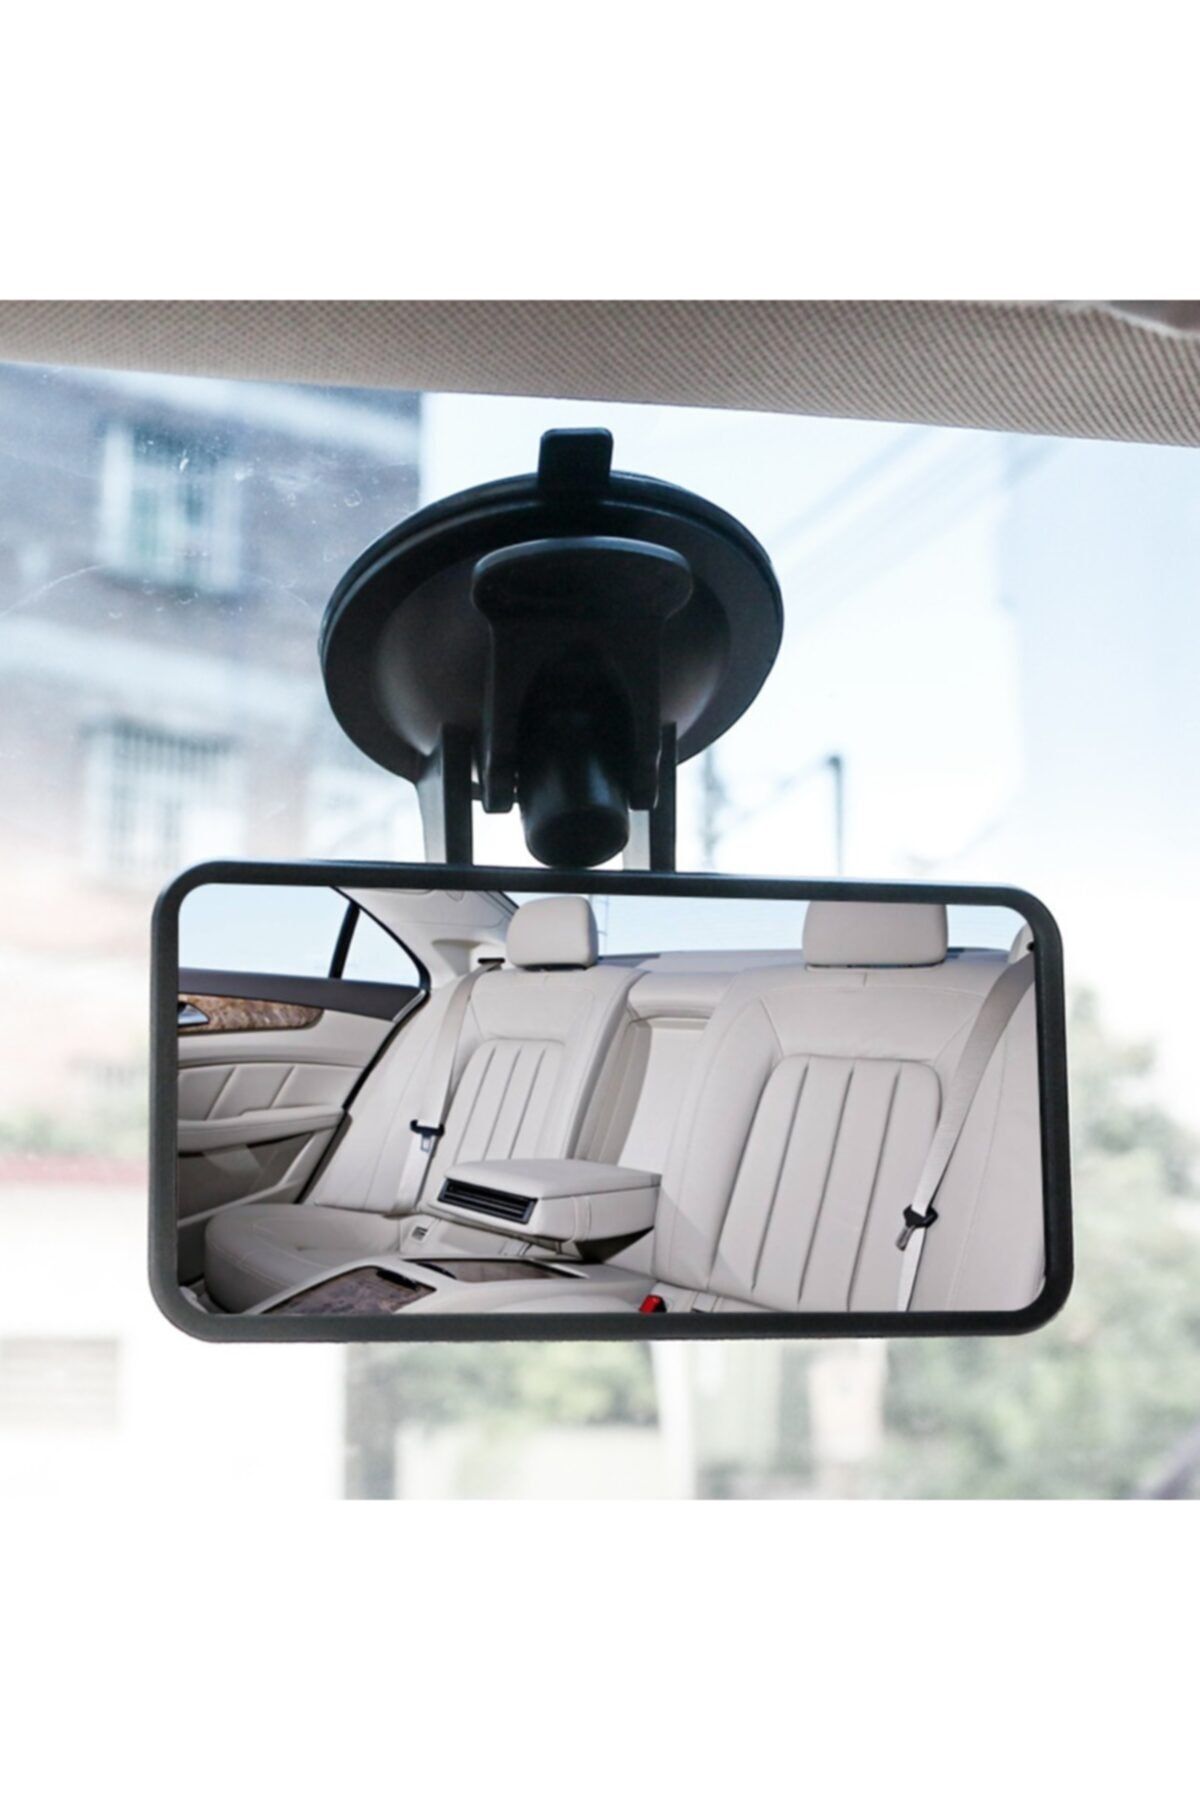 BsElektronik Iç Dikiz Aynası Ölçüleri 6x12 Cm Araç Çocuk Iç Ayna